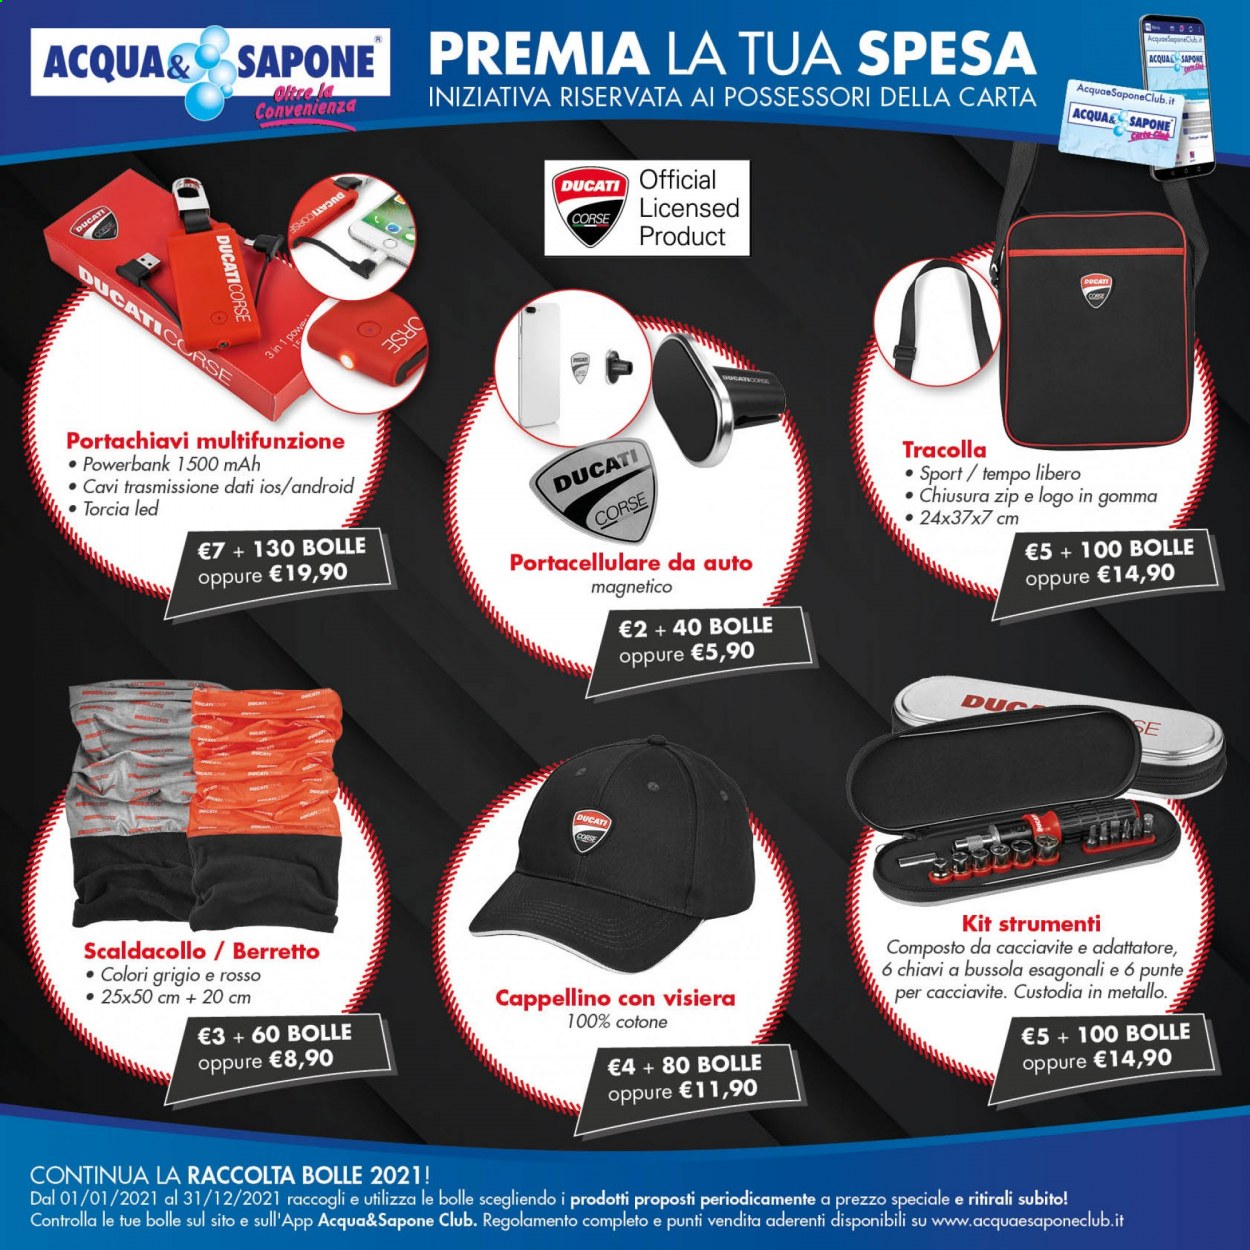 thumbnail - Volantino Acqua & Sapone - Prodotti in offerta - Ducati, torcia, power bank, berretto, cappellino, scaldacollo, portachiavi, torcia LED, visiera. Pagina 1.